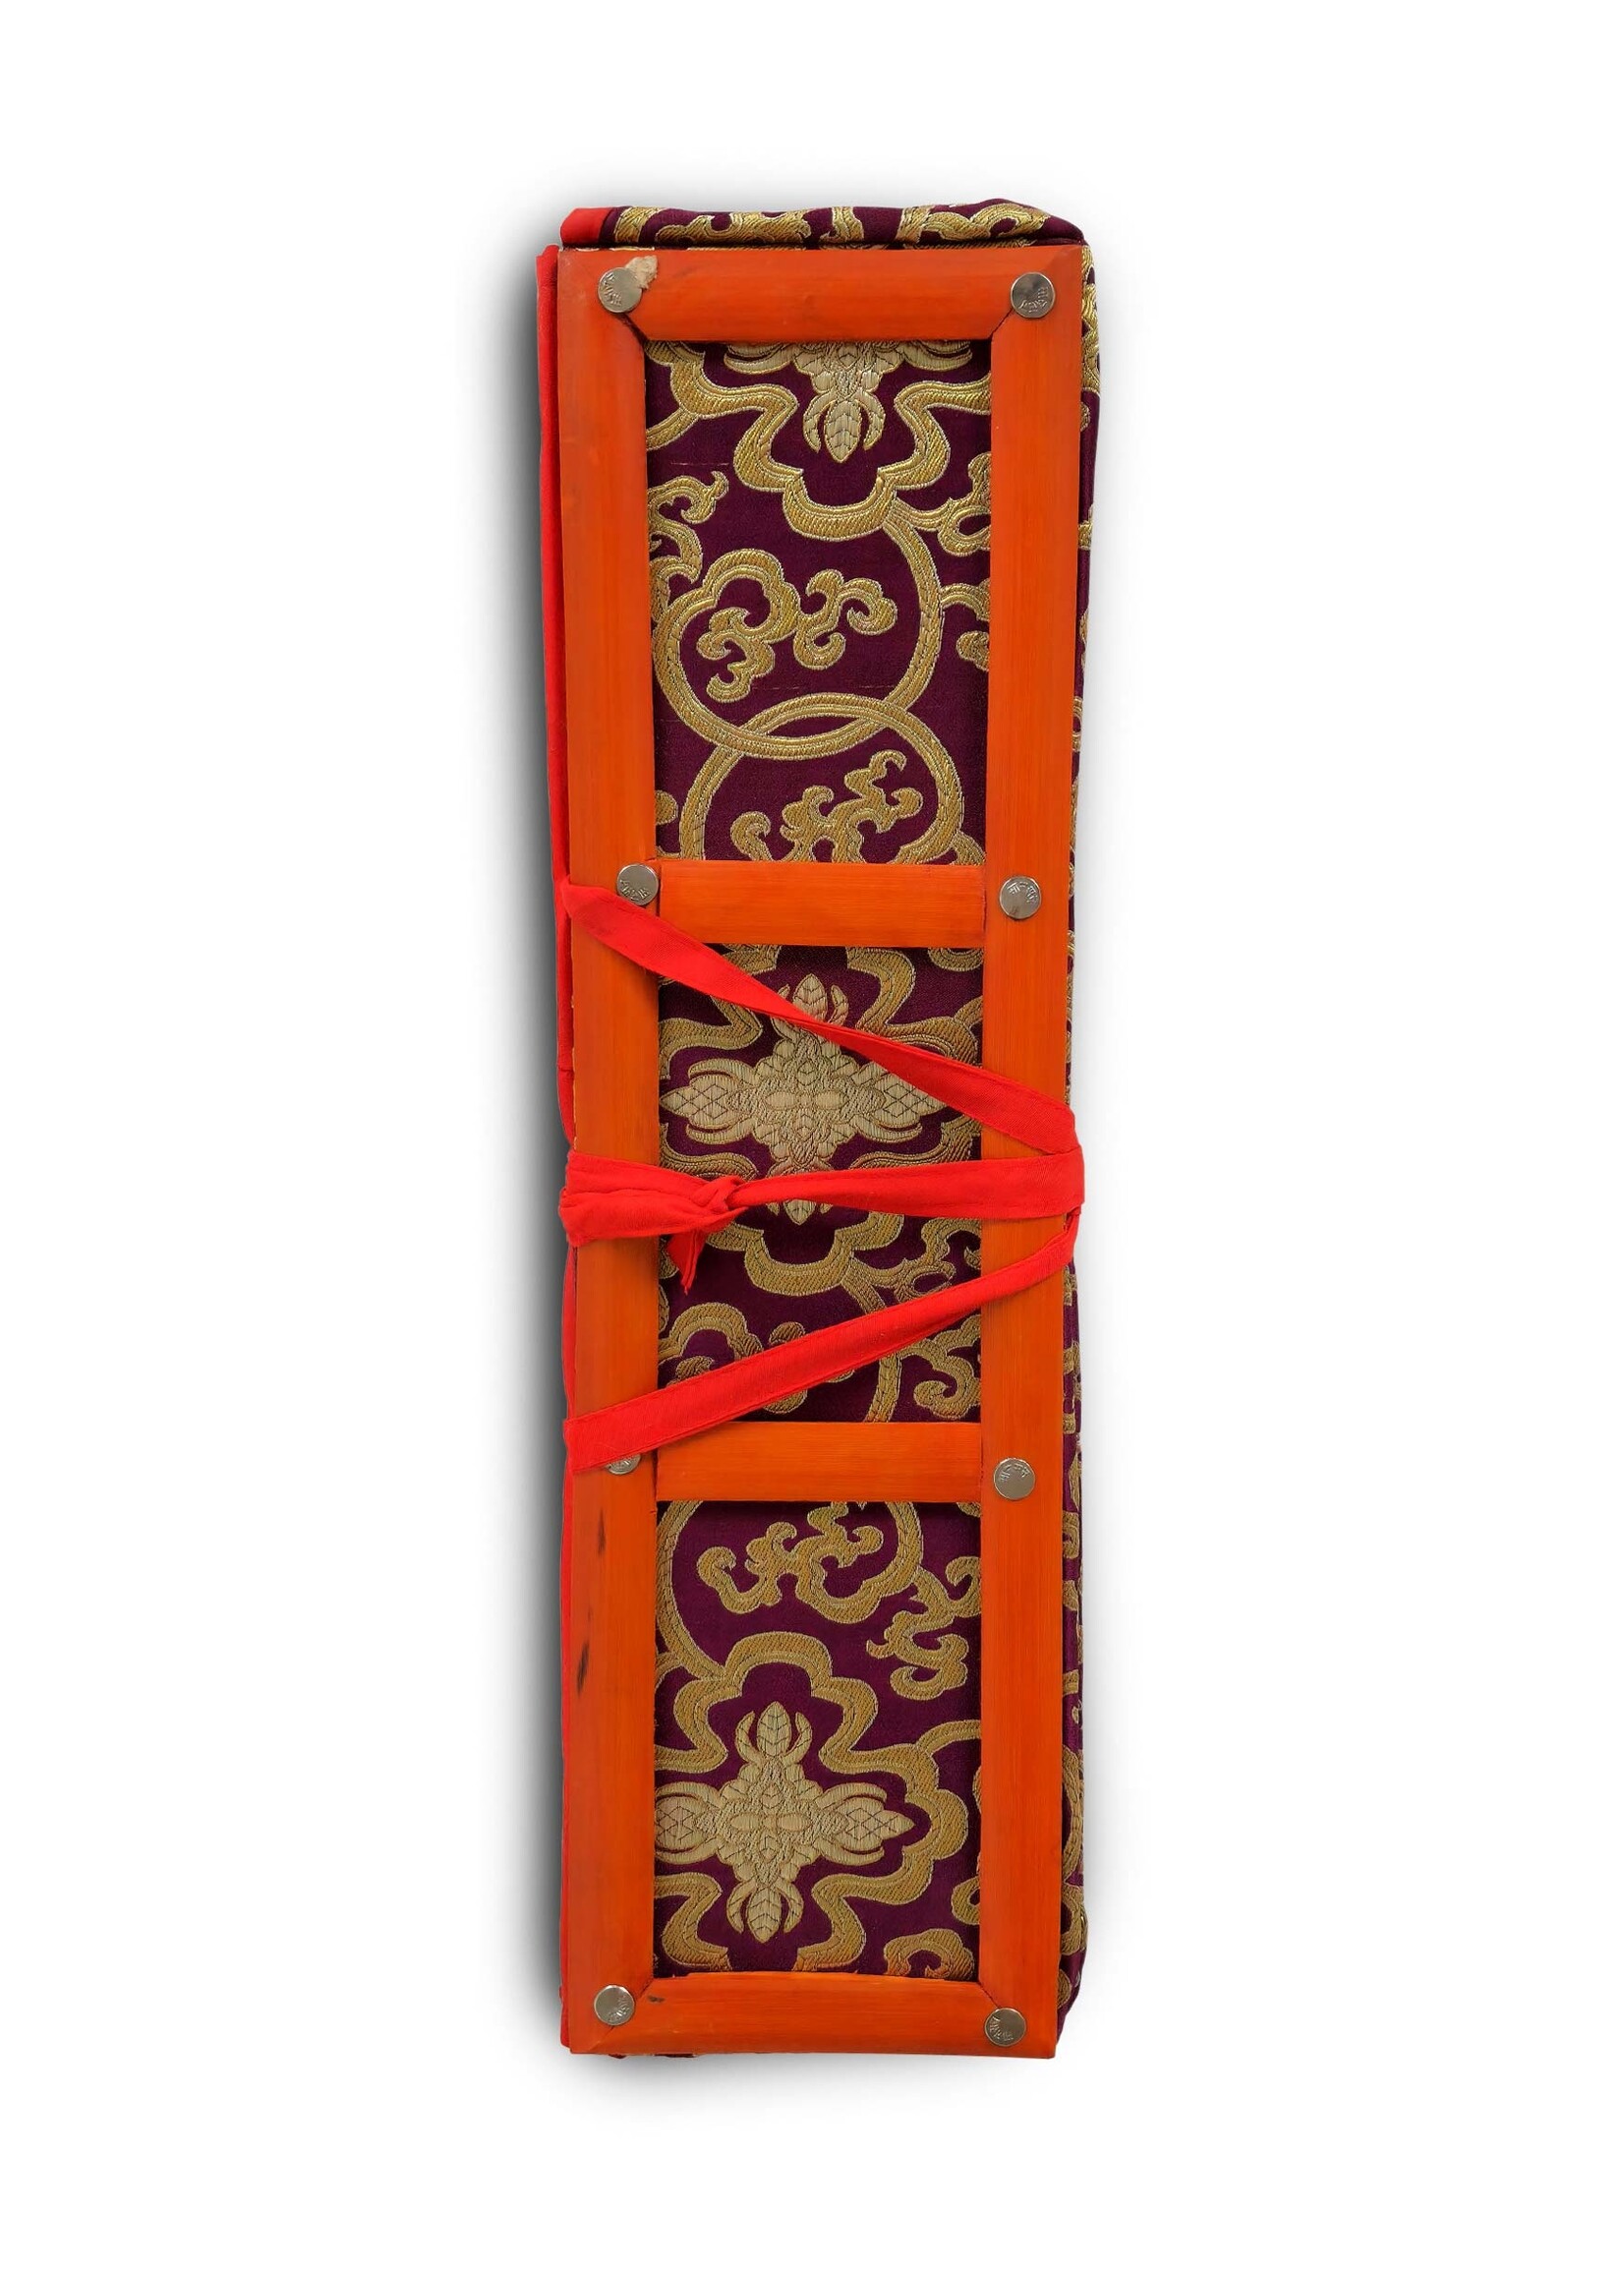 Copertina di testo Dharma in broccato con cornice in bambù, blu